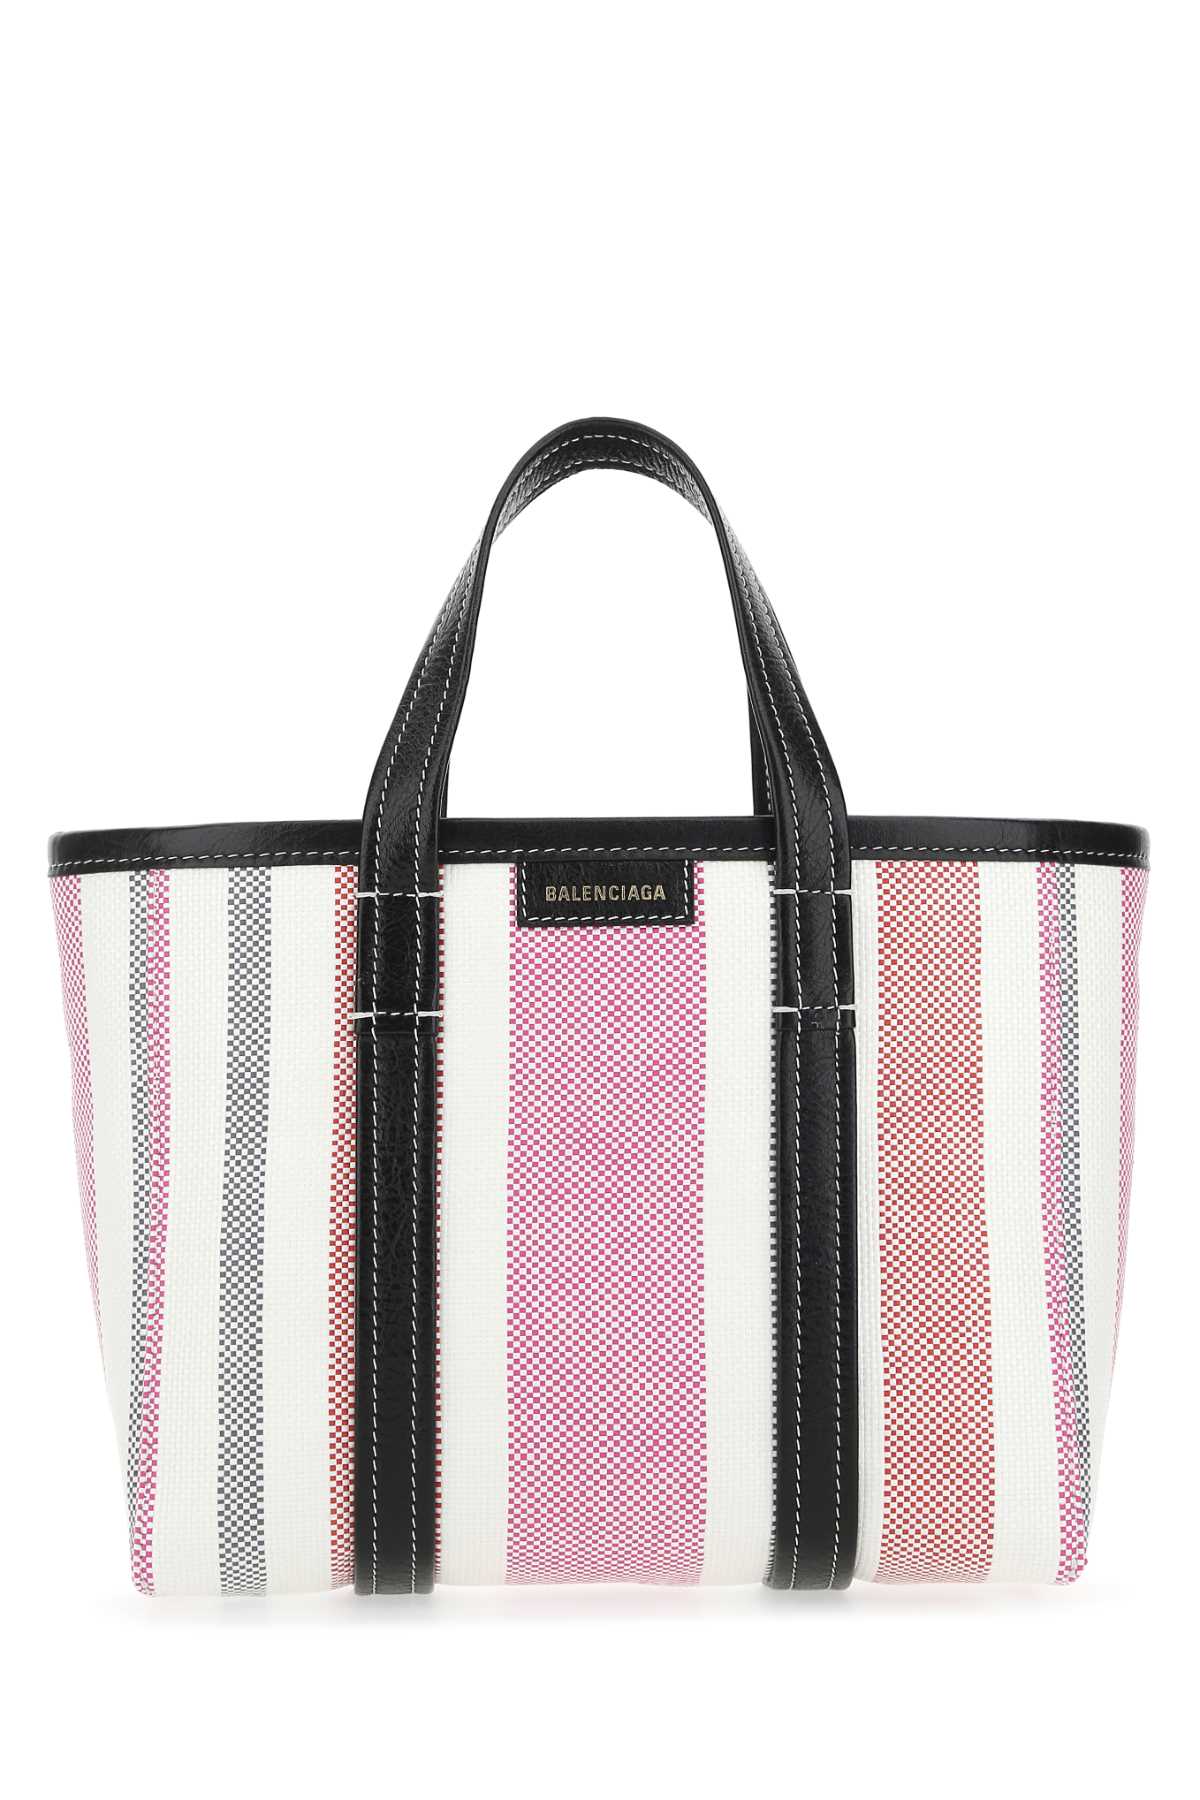 Balenciaga Multicolor Raffia Barbes Handbag